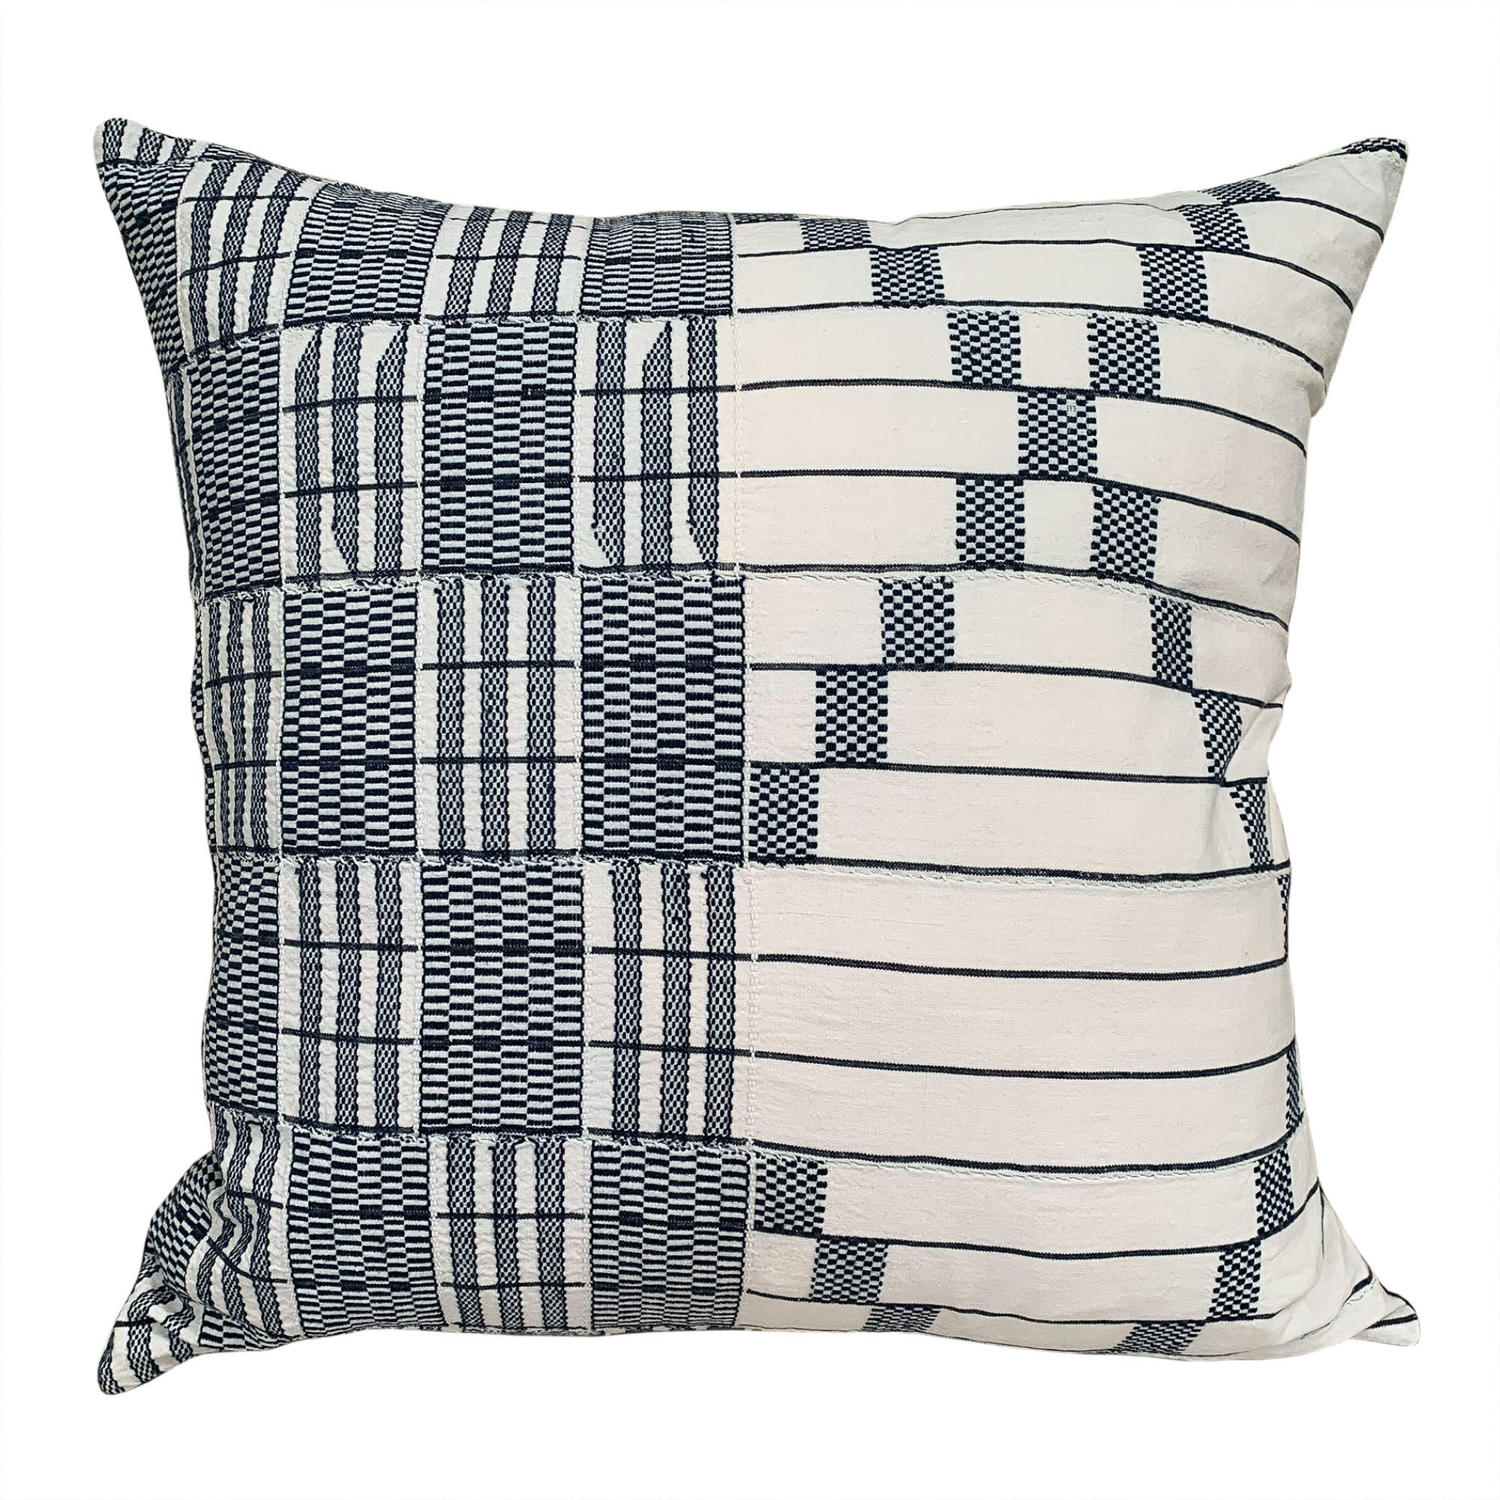 Blue and white Asanti cushions